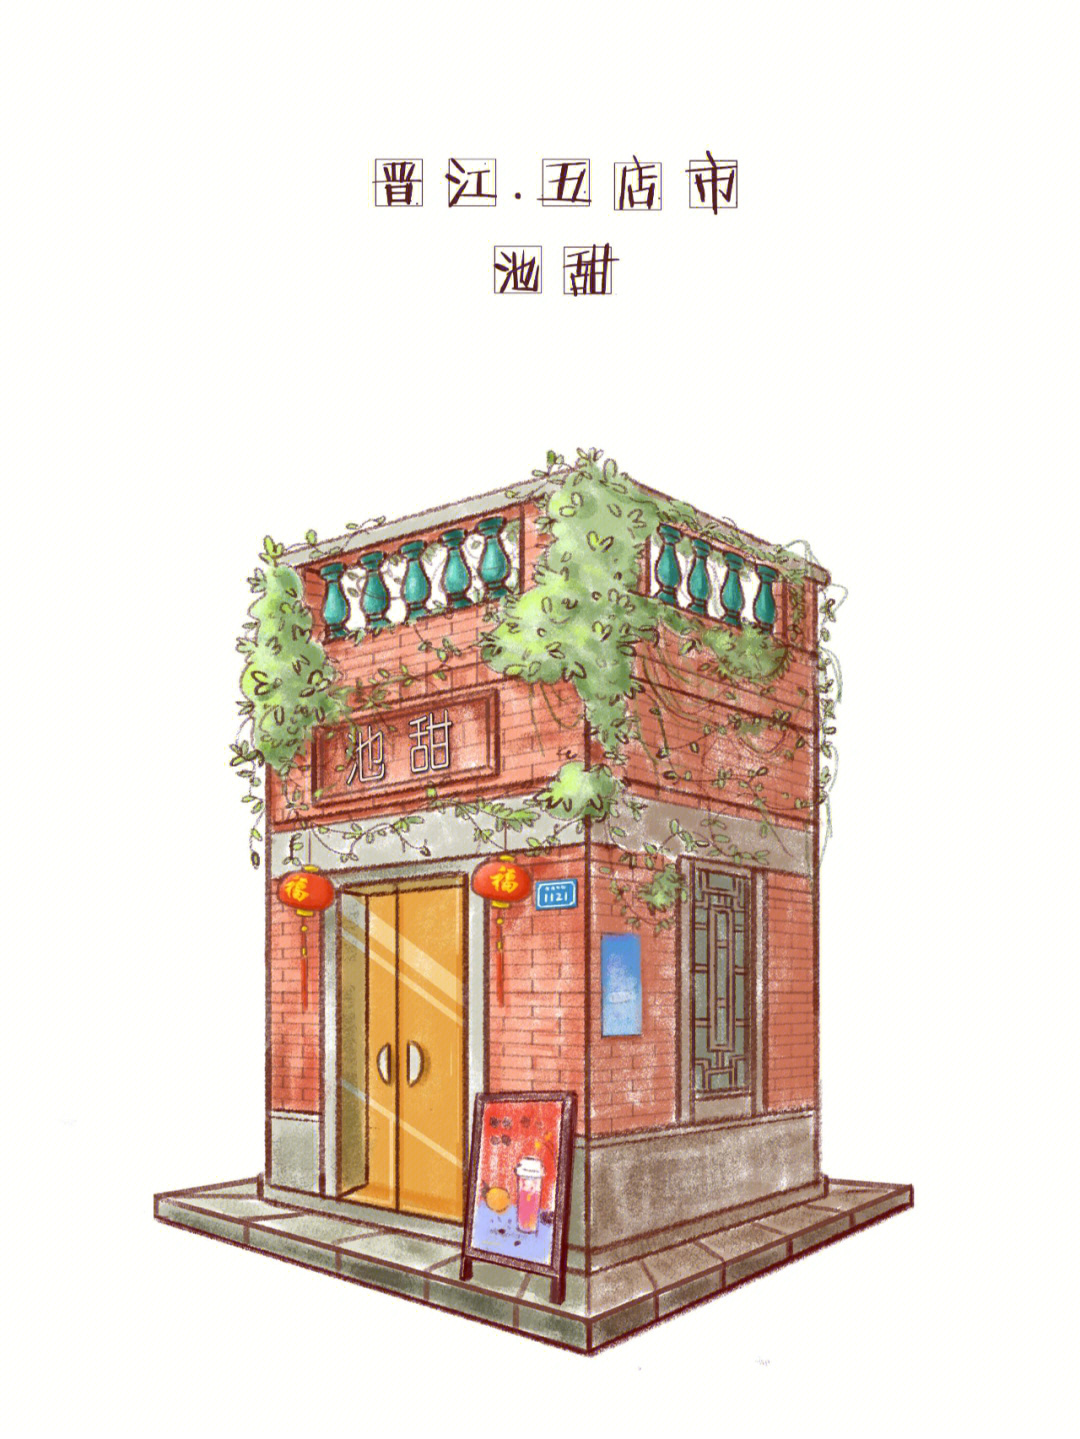 五店市,城市里的闽南风,红砖古厝的文化韵味,结合新式的小店设计